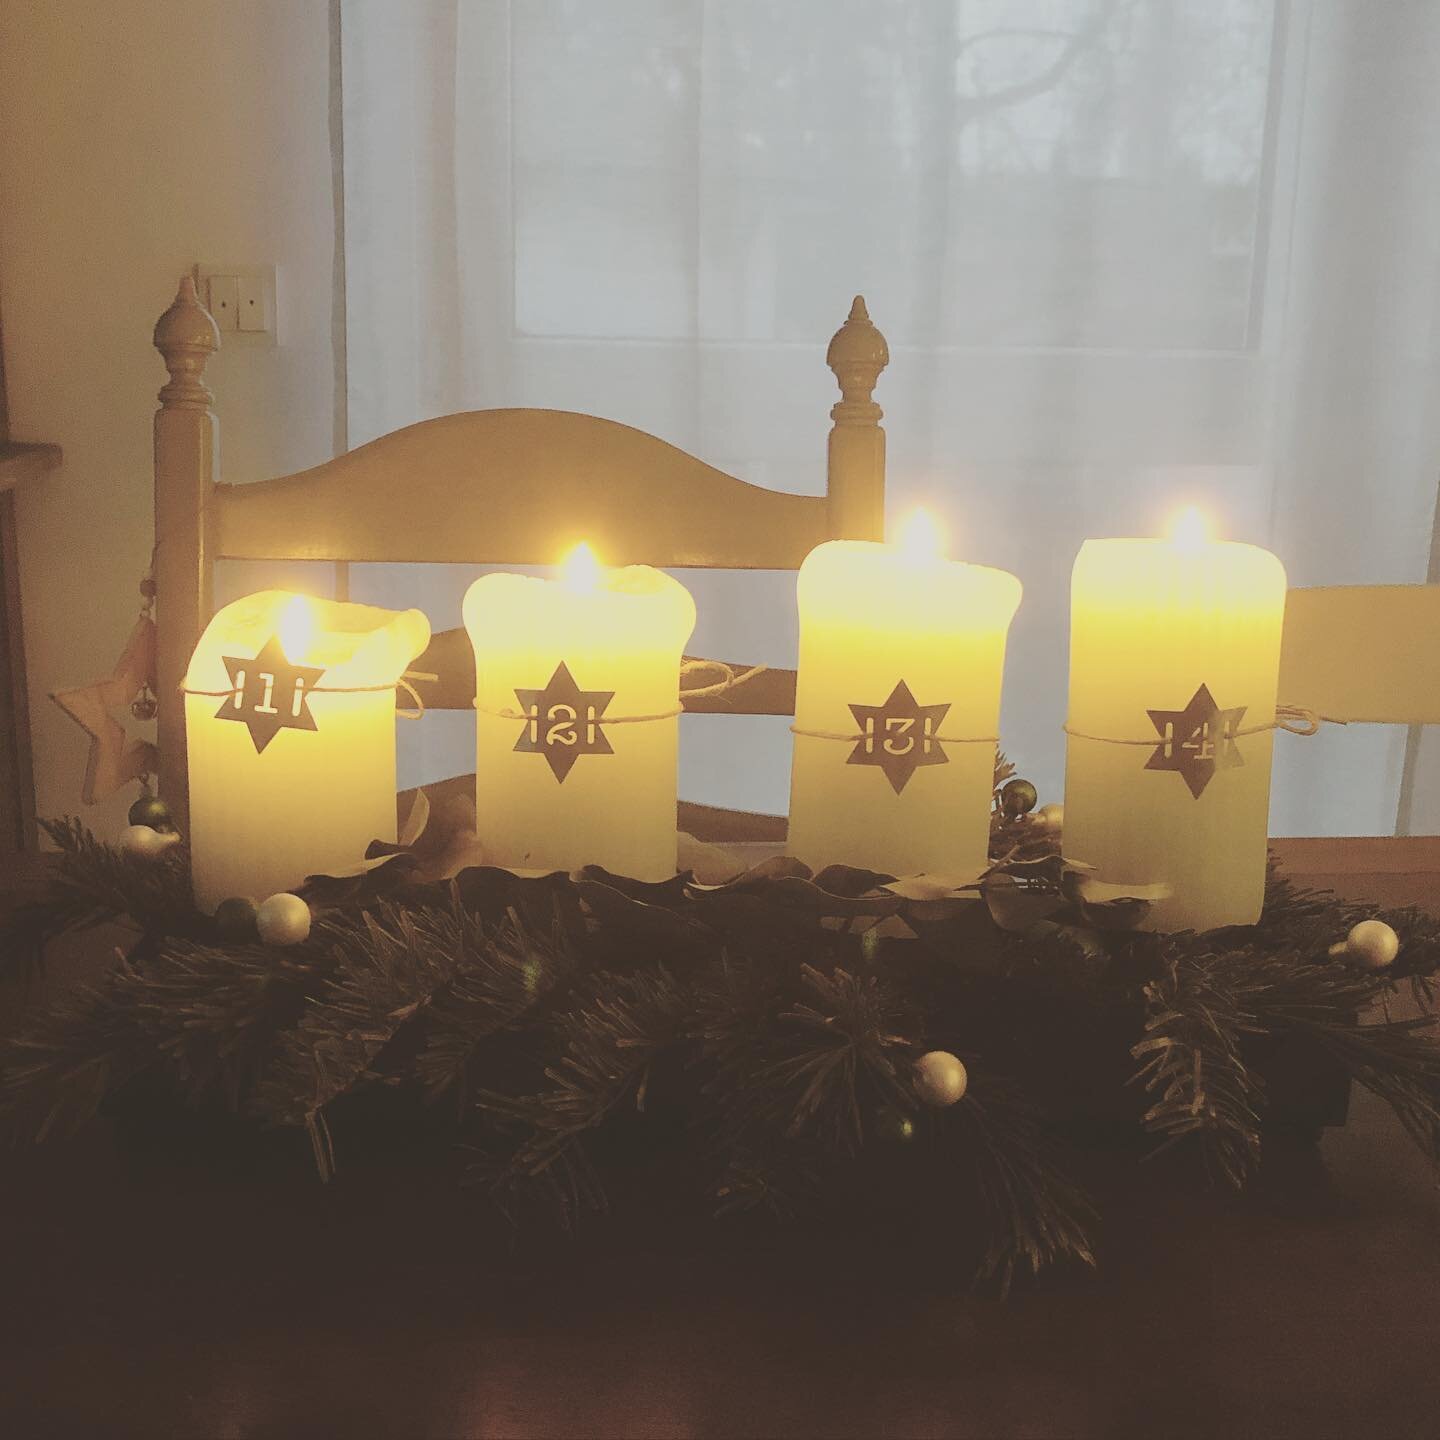 Bevor Weihnachten morgen ganz vorbei ist, heute noch das vergessene Foto mit der 4. Kerze 🕯 🕯 🕯 🕯 
Genie&szlig;t alle euren zweiten Weihnachtsfeiertag 🎄

#weihnachten2020 #advent #feiertag #familienzeit